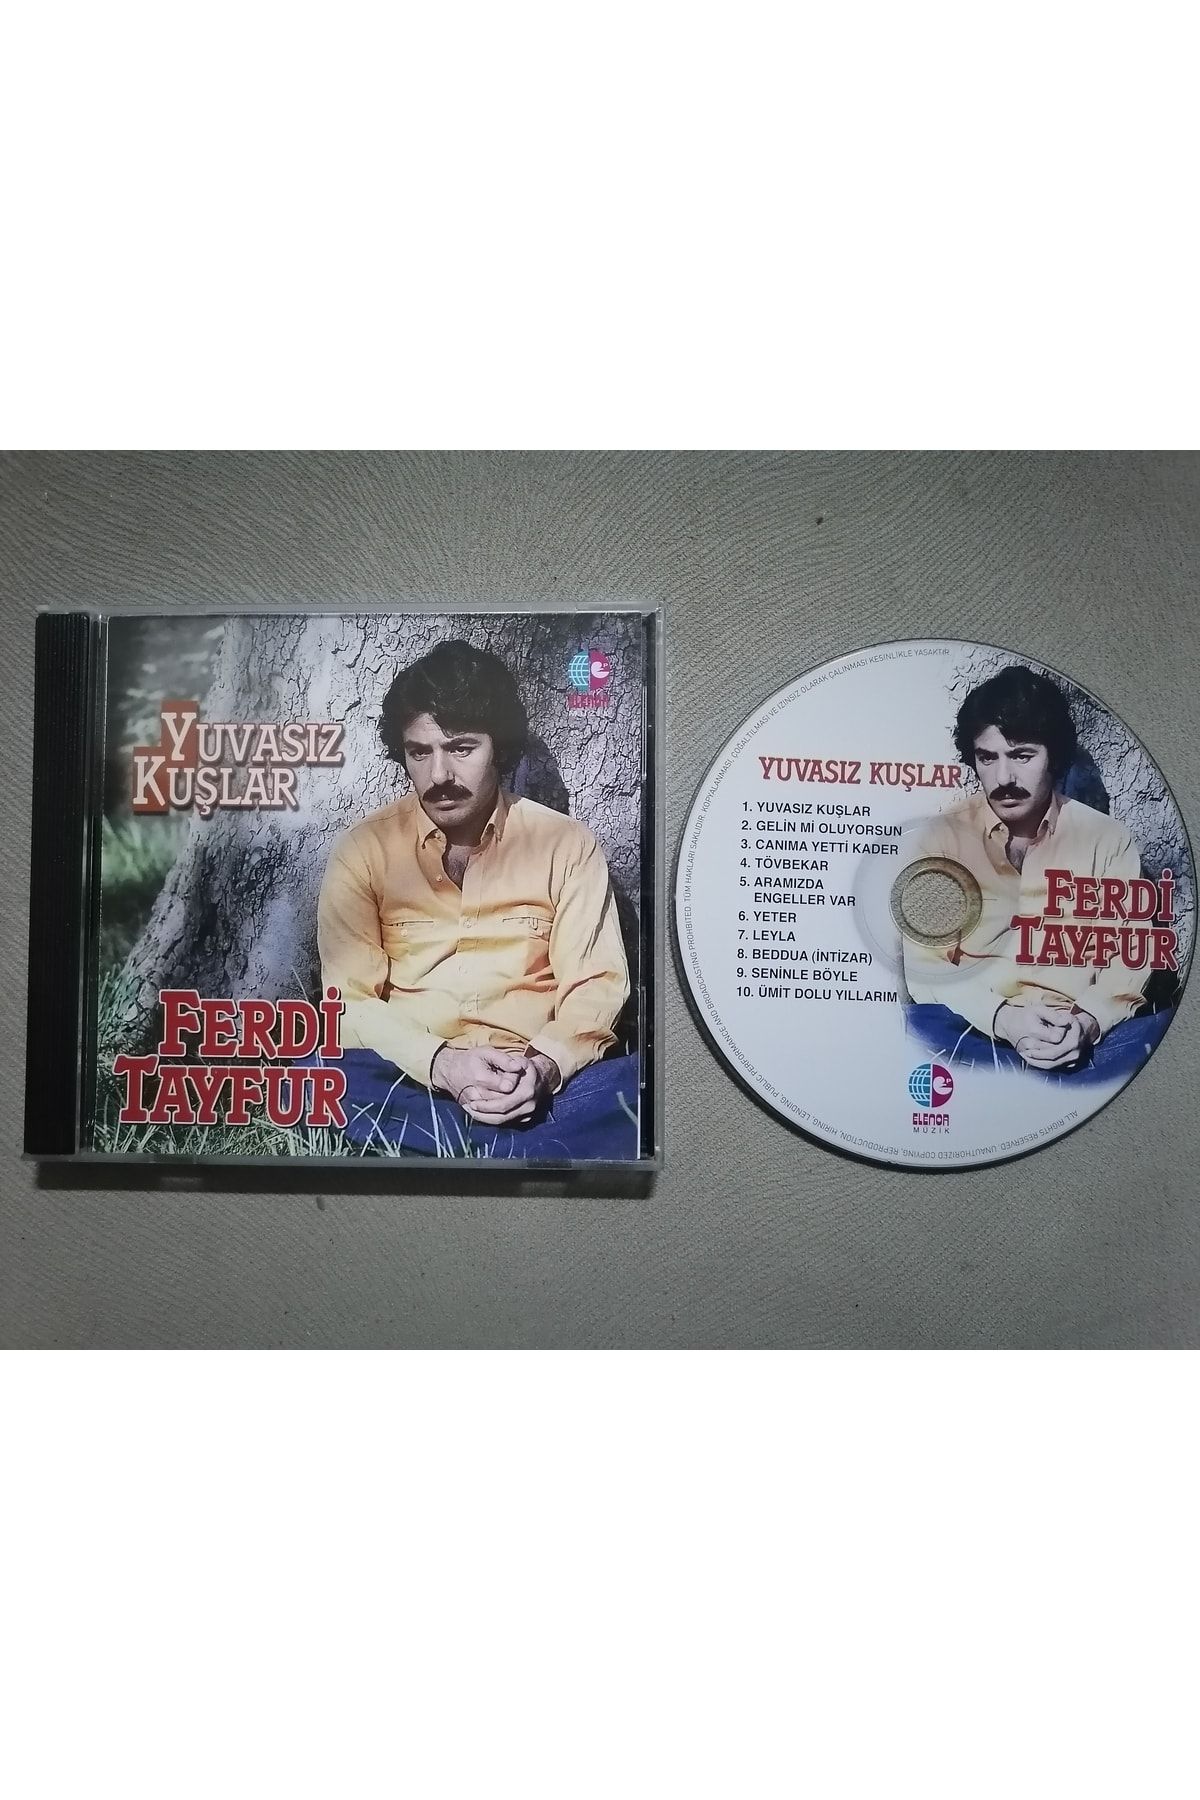 CD Ferdi Tayfur - Yuvasız Kuşlar - 2018 Türkiye Basım Albüm